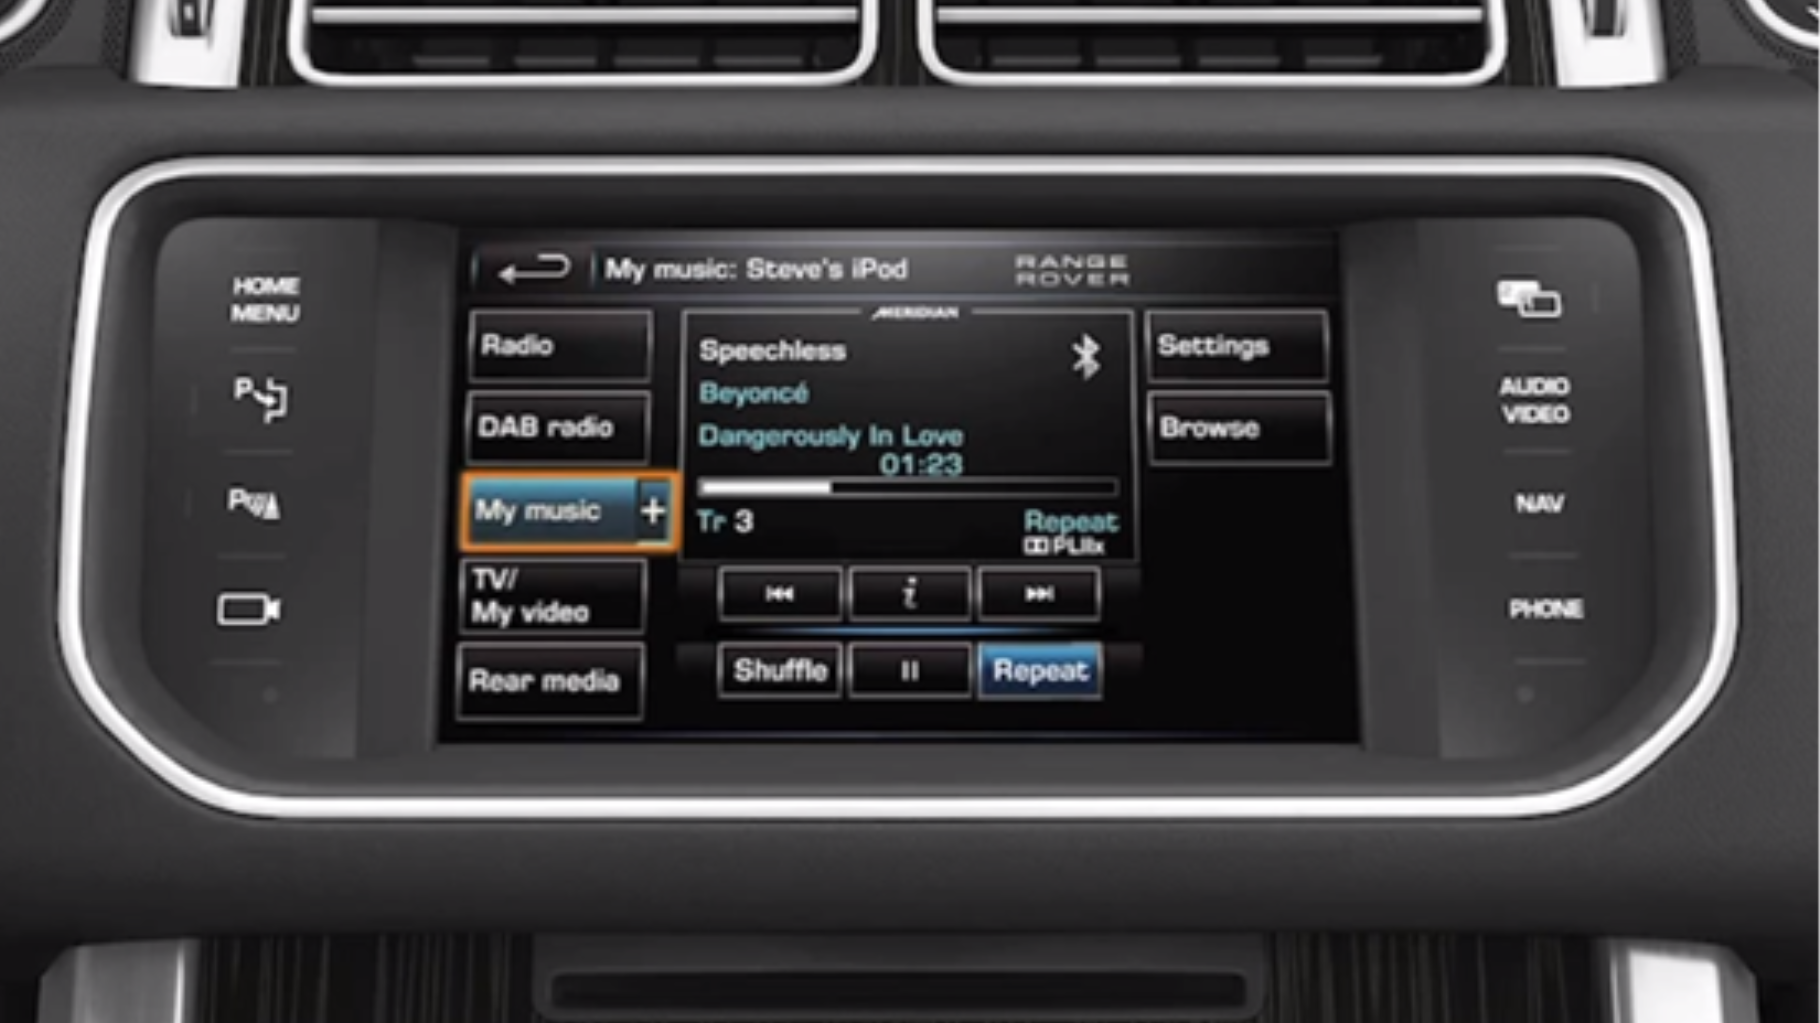 Range Rover Audio Connectivity